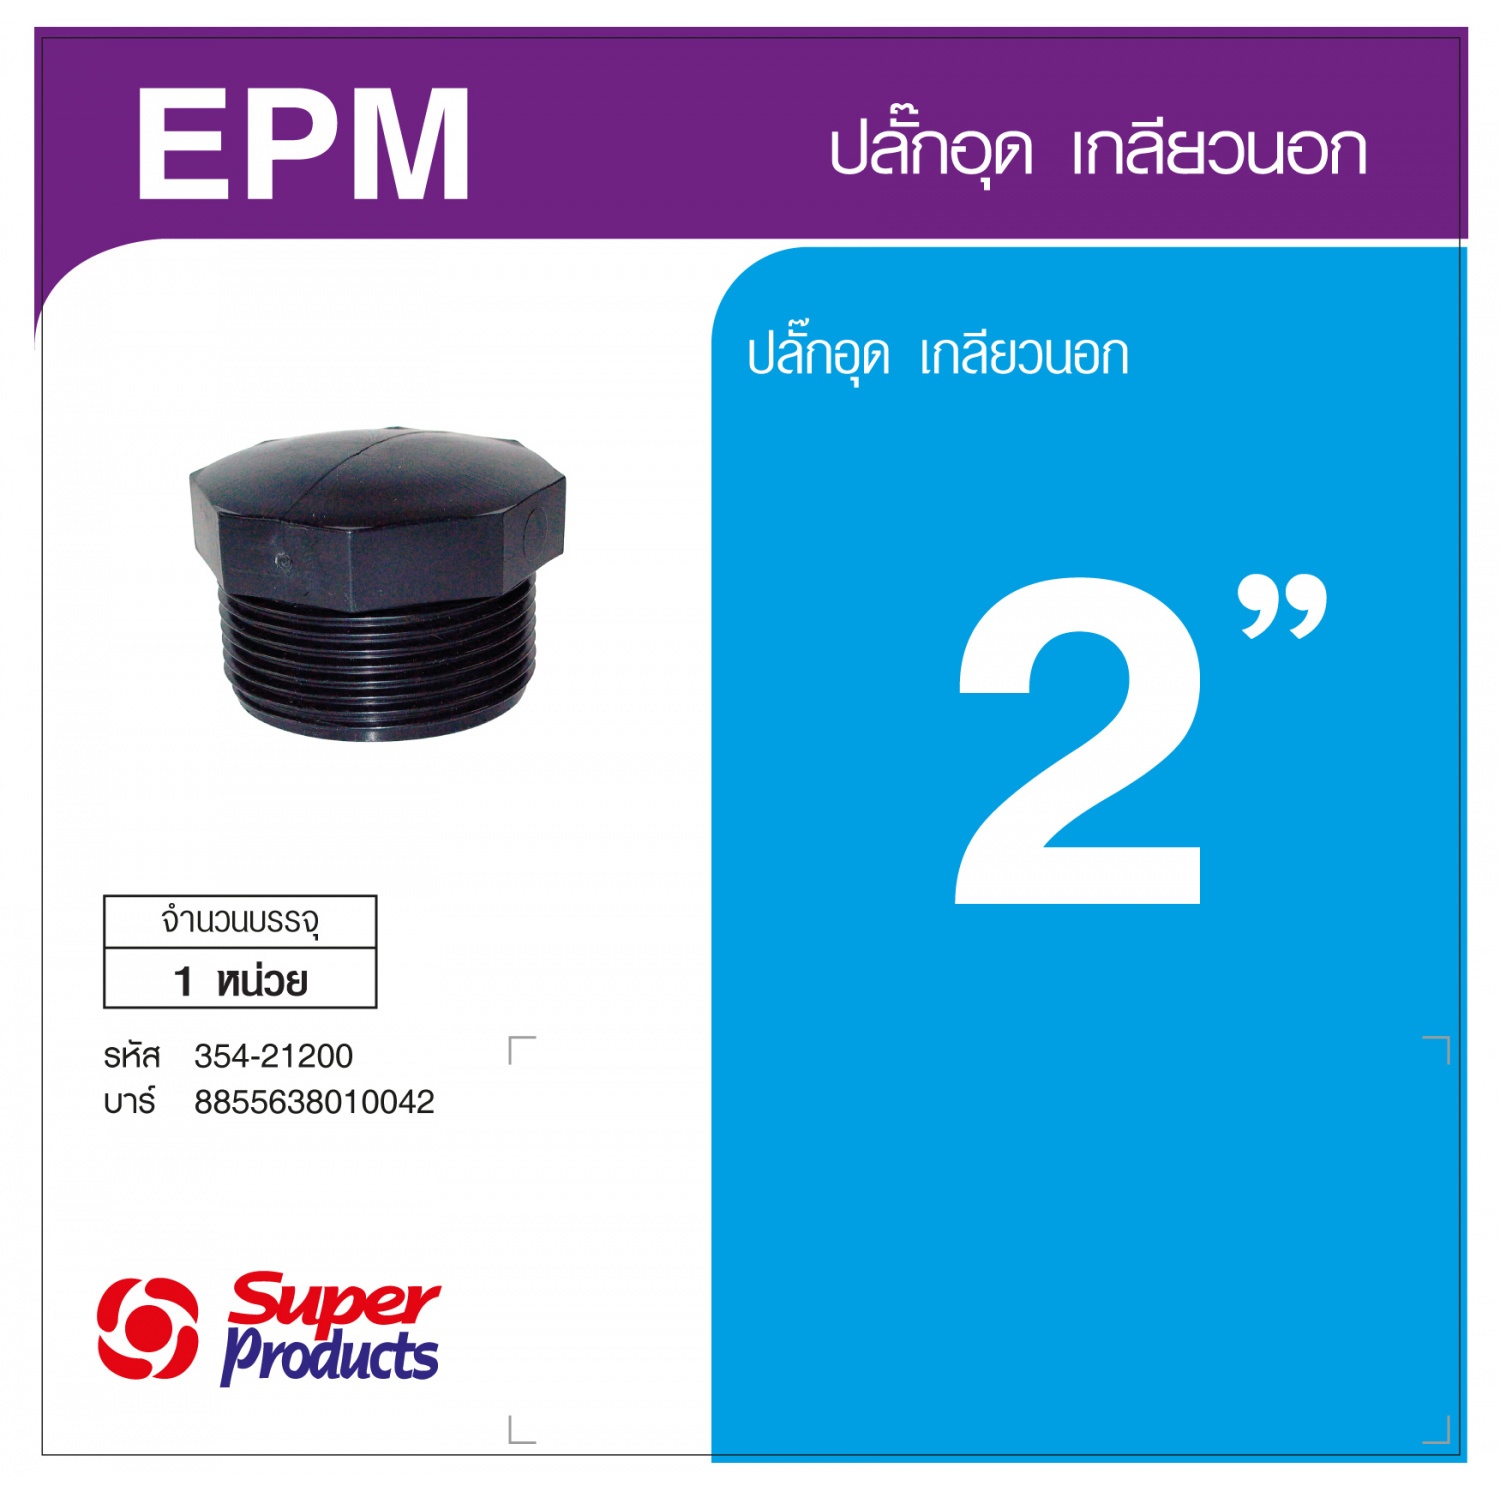 Super Products EPM 2 ปลั๊กอุด เกลียวนอก 2 นิ้ว